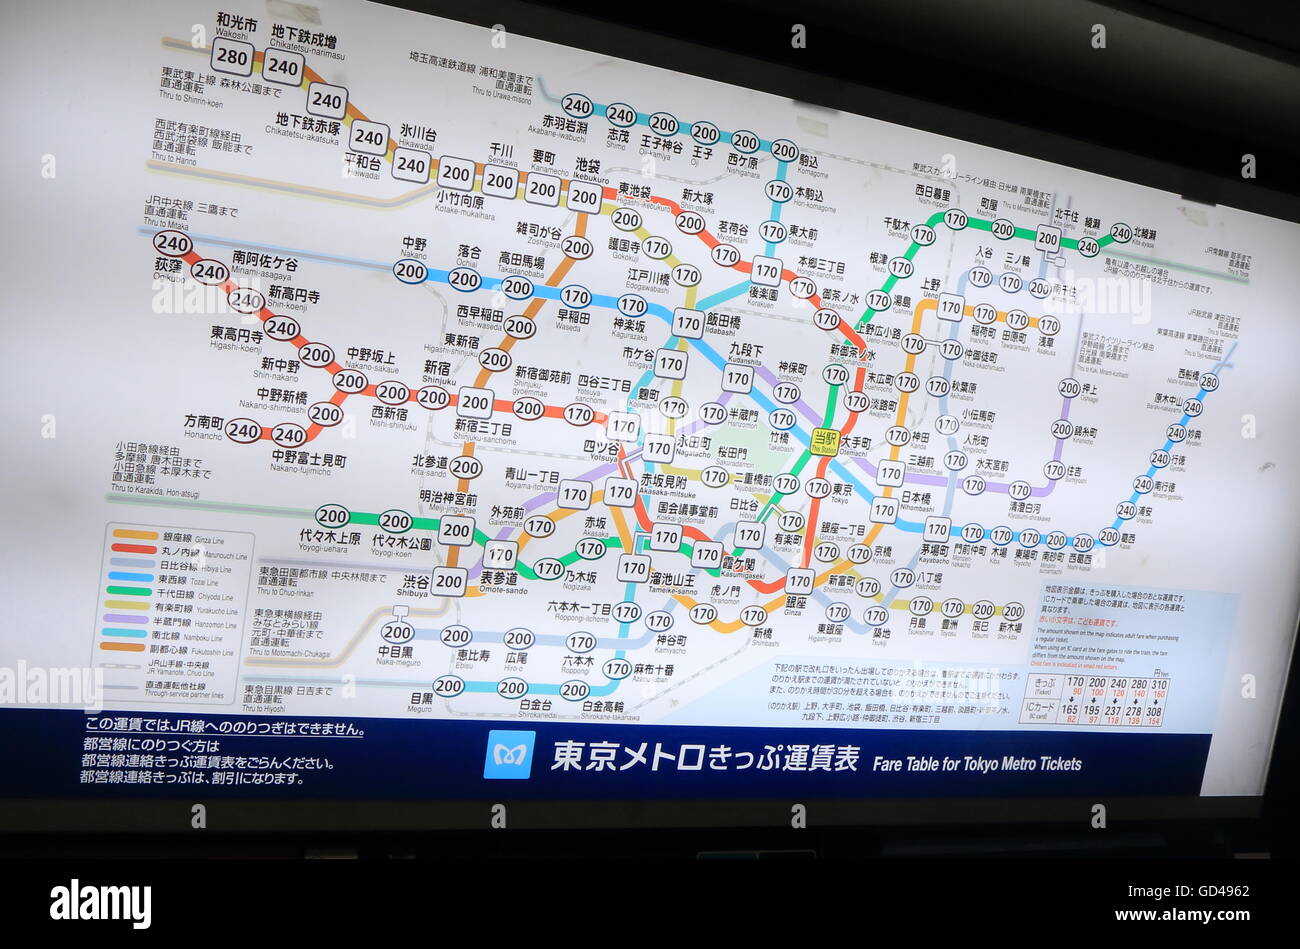 Tokyo Metro subway map in Tokyo Japan. Stock Photo